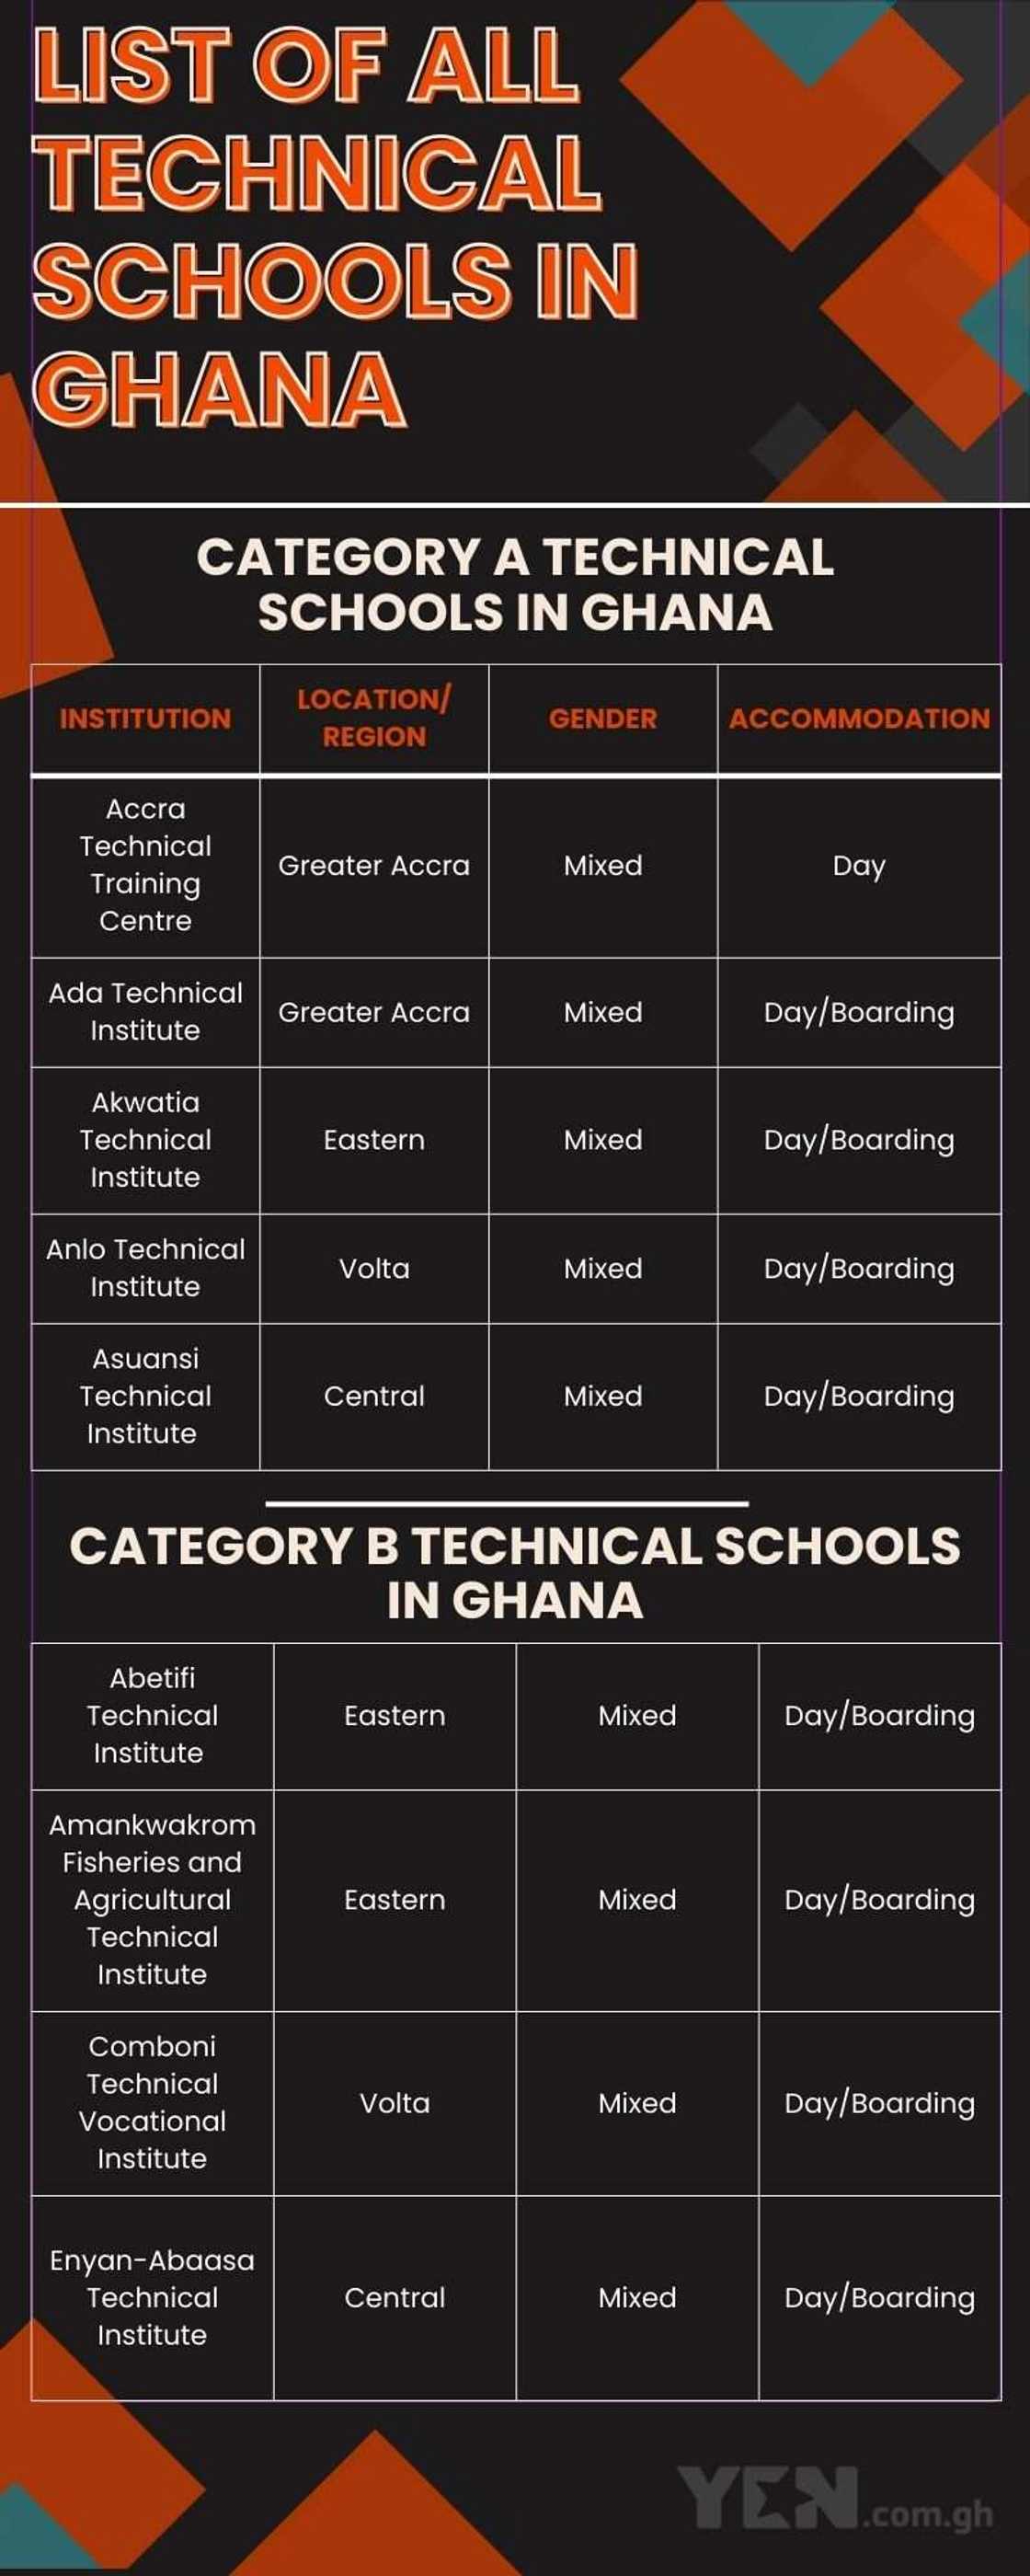 Technical schools in Ghana